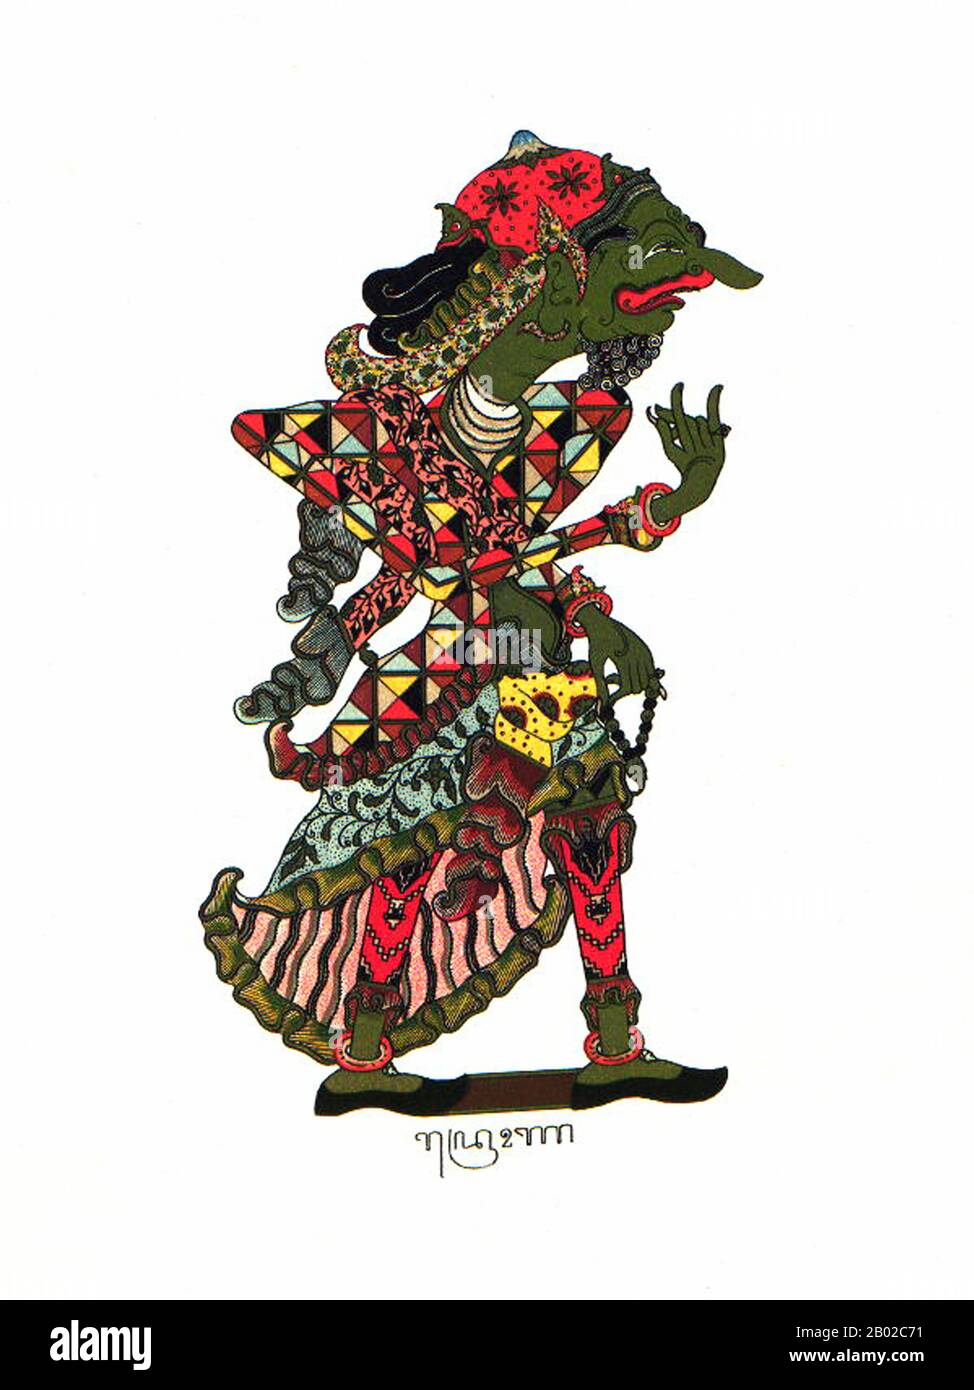 Wayang ist ein javanisches Wort für bestimmte Arten von Theater (wörtlich "Schatten"). Wenn der Begriff auf Arten von Puppentheater verweist, wird die Puppe selbst manchmal als Wayang bezeichnet. Aufführungen von Schattenpuppentheatern werden von Gamelan in Java begleitet. Die UNESCO ernannte Wayang Kulit, ein Schattenpuppentheater und das bekannteste des indonesischen Wayang, am 7. November 2003 zu einem Meisterwerk des Oralen und Immateriellen Erbes Der Menschheit. Stockfoto